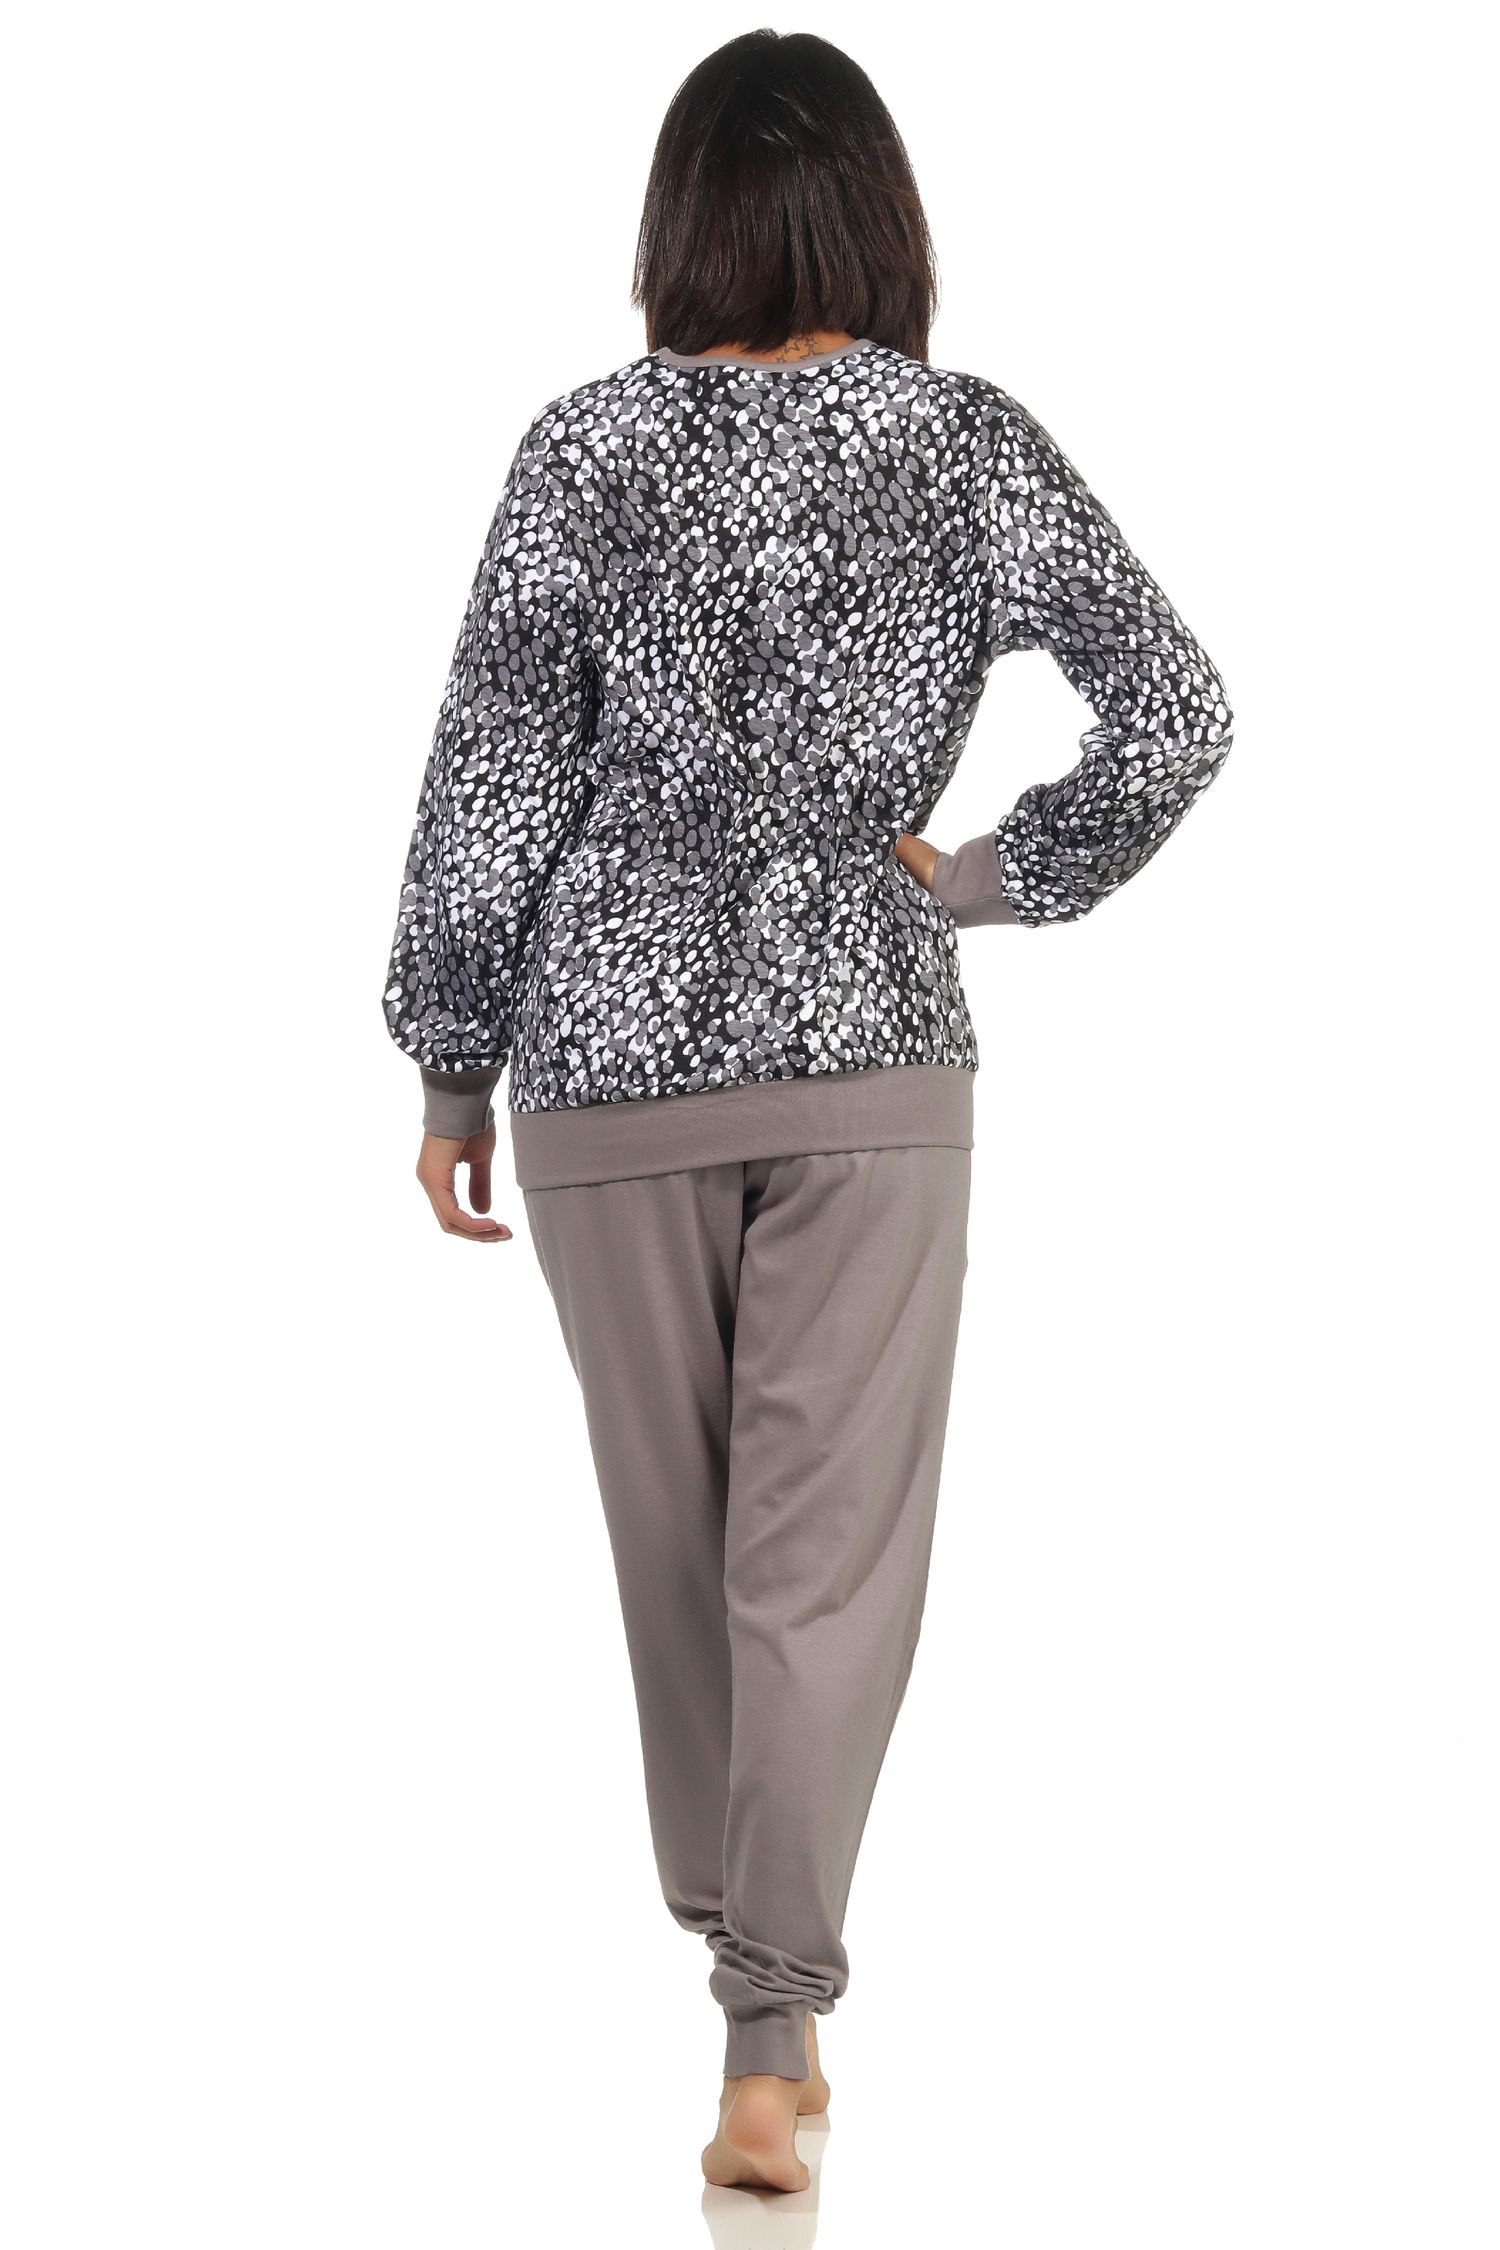 Damen Pyjama langarm Schlafanzug mit Bündchen in Tupfen / Animal Print Optik - 202 90 460